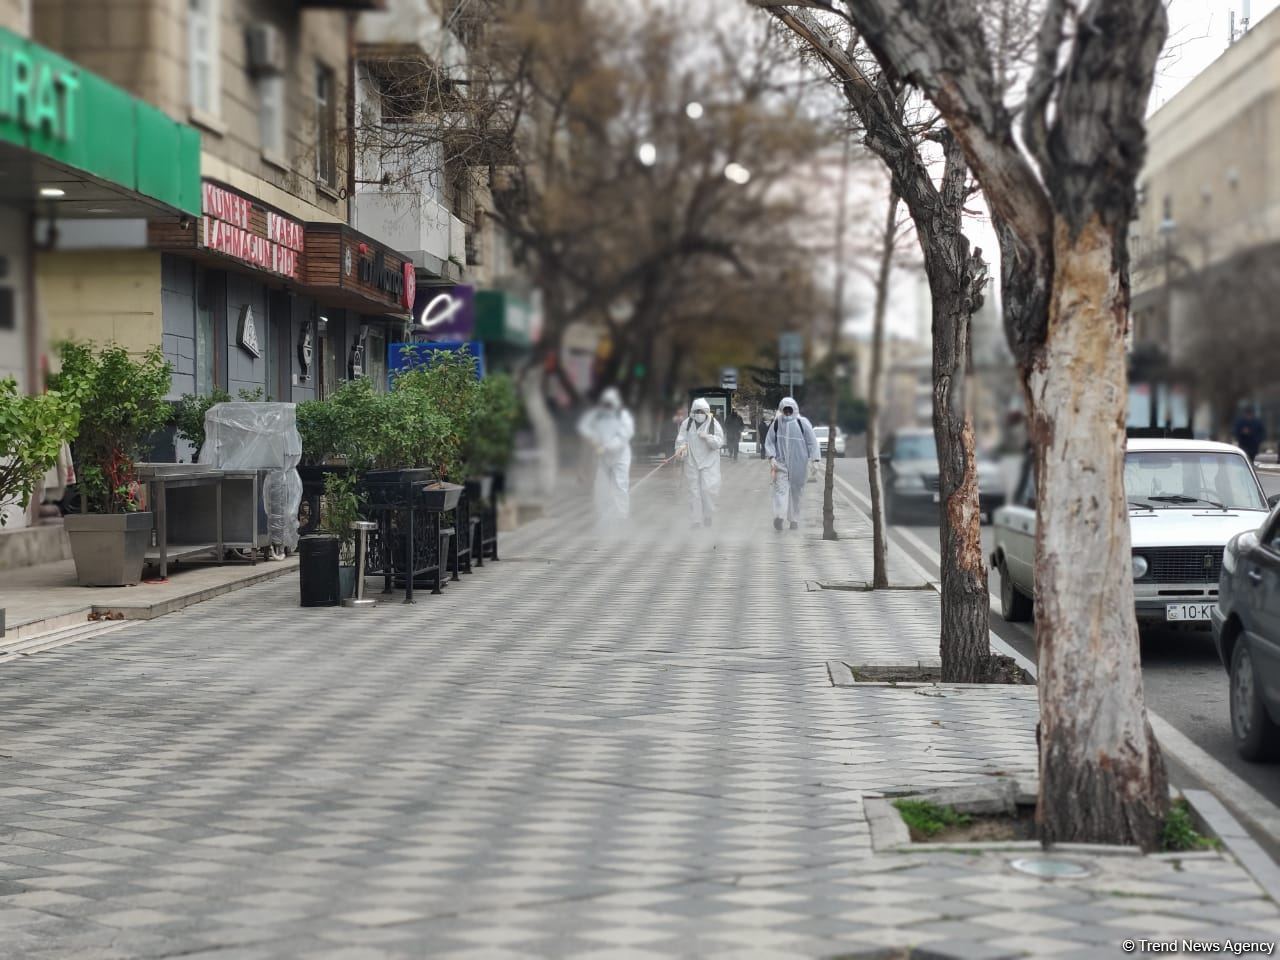 Улицы Баку в очередной раз были продезинфицированы (ФОТО)